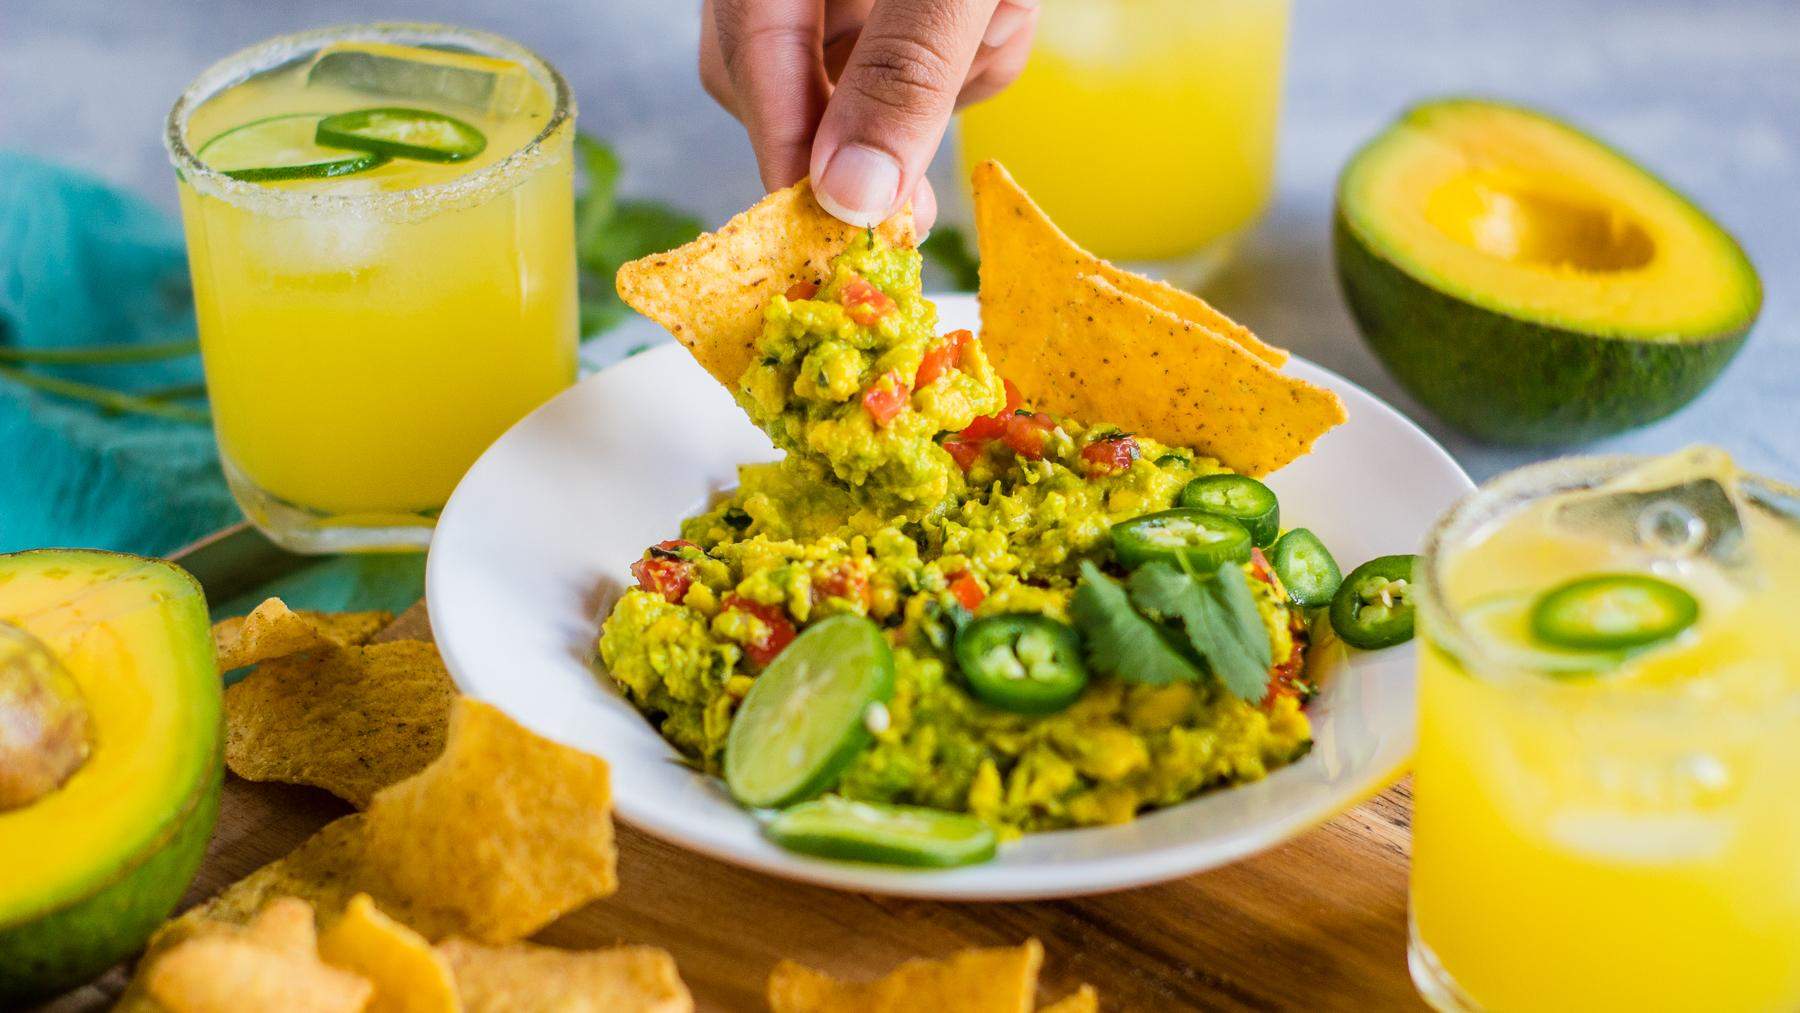 Cu ce se mănâncă guacamole sau sosul de avocado. 3 idei de gustări sănătoase și delicioase